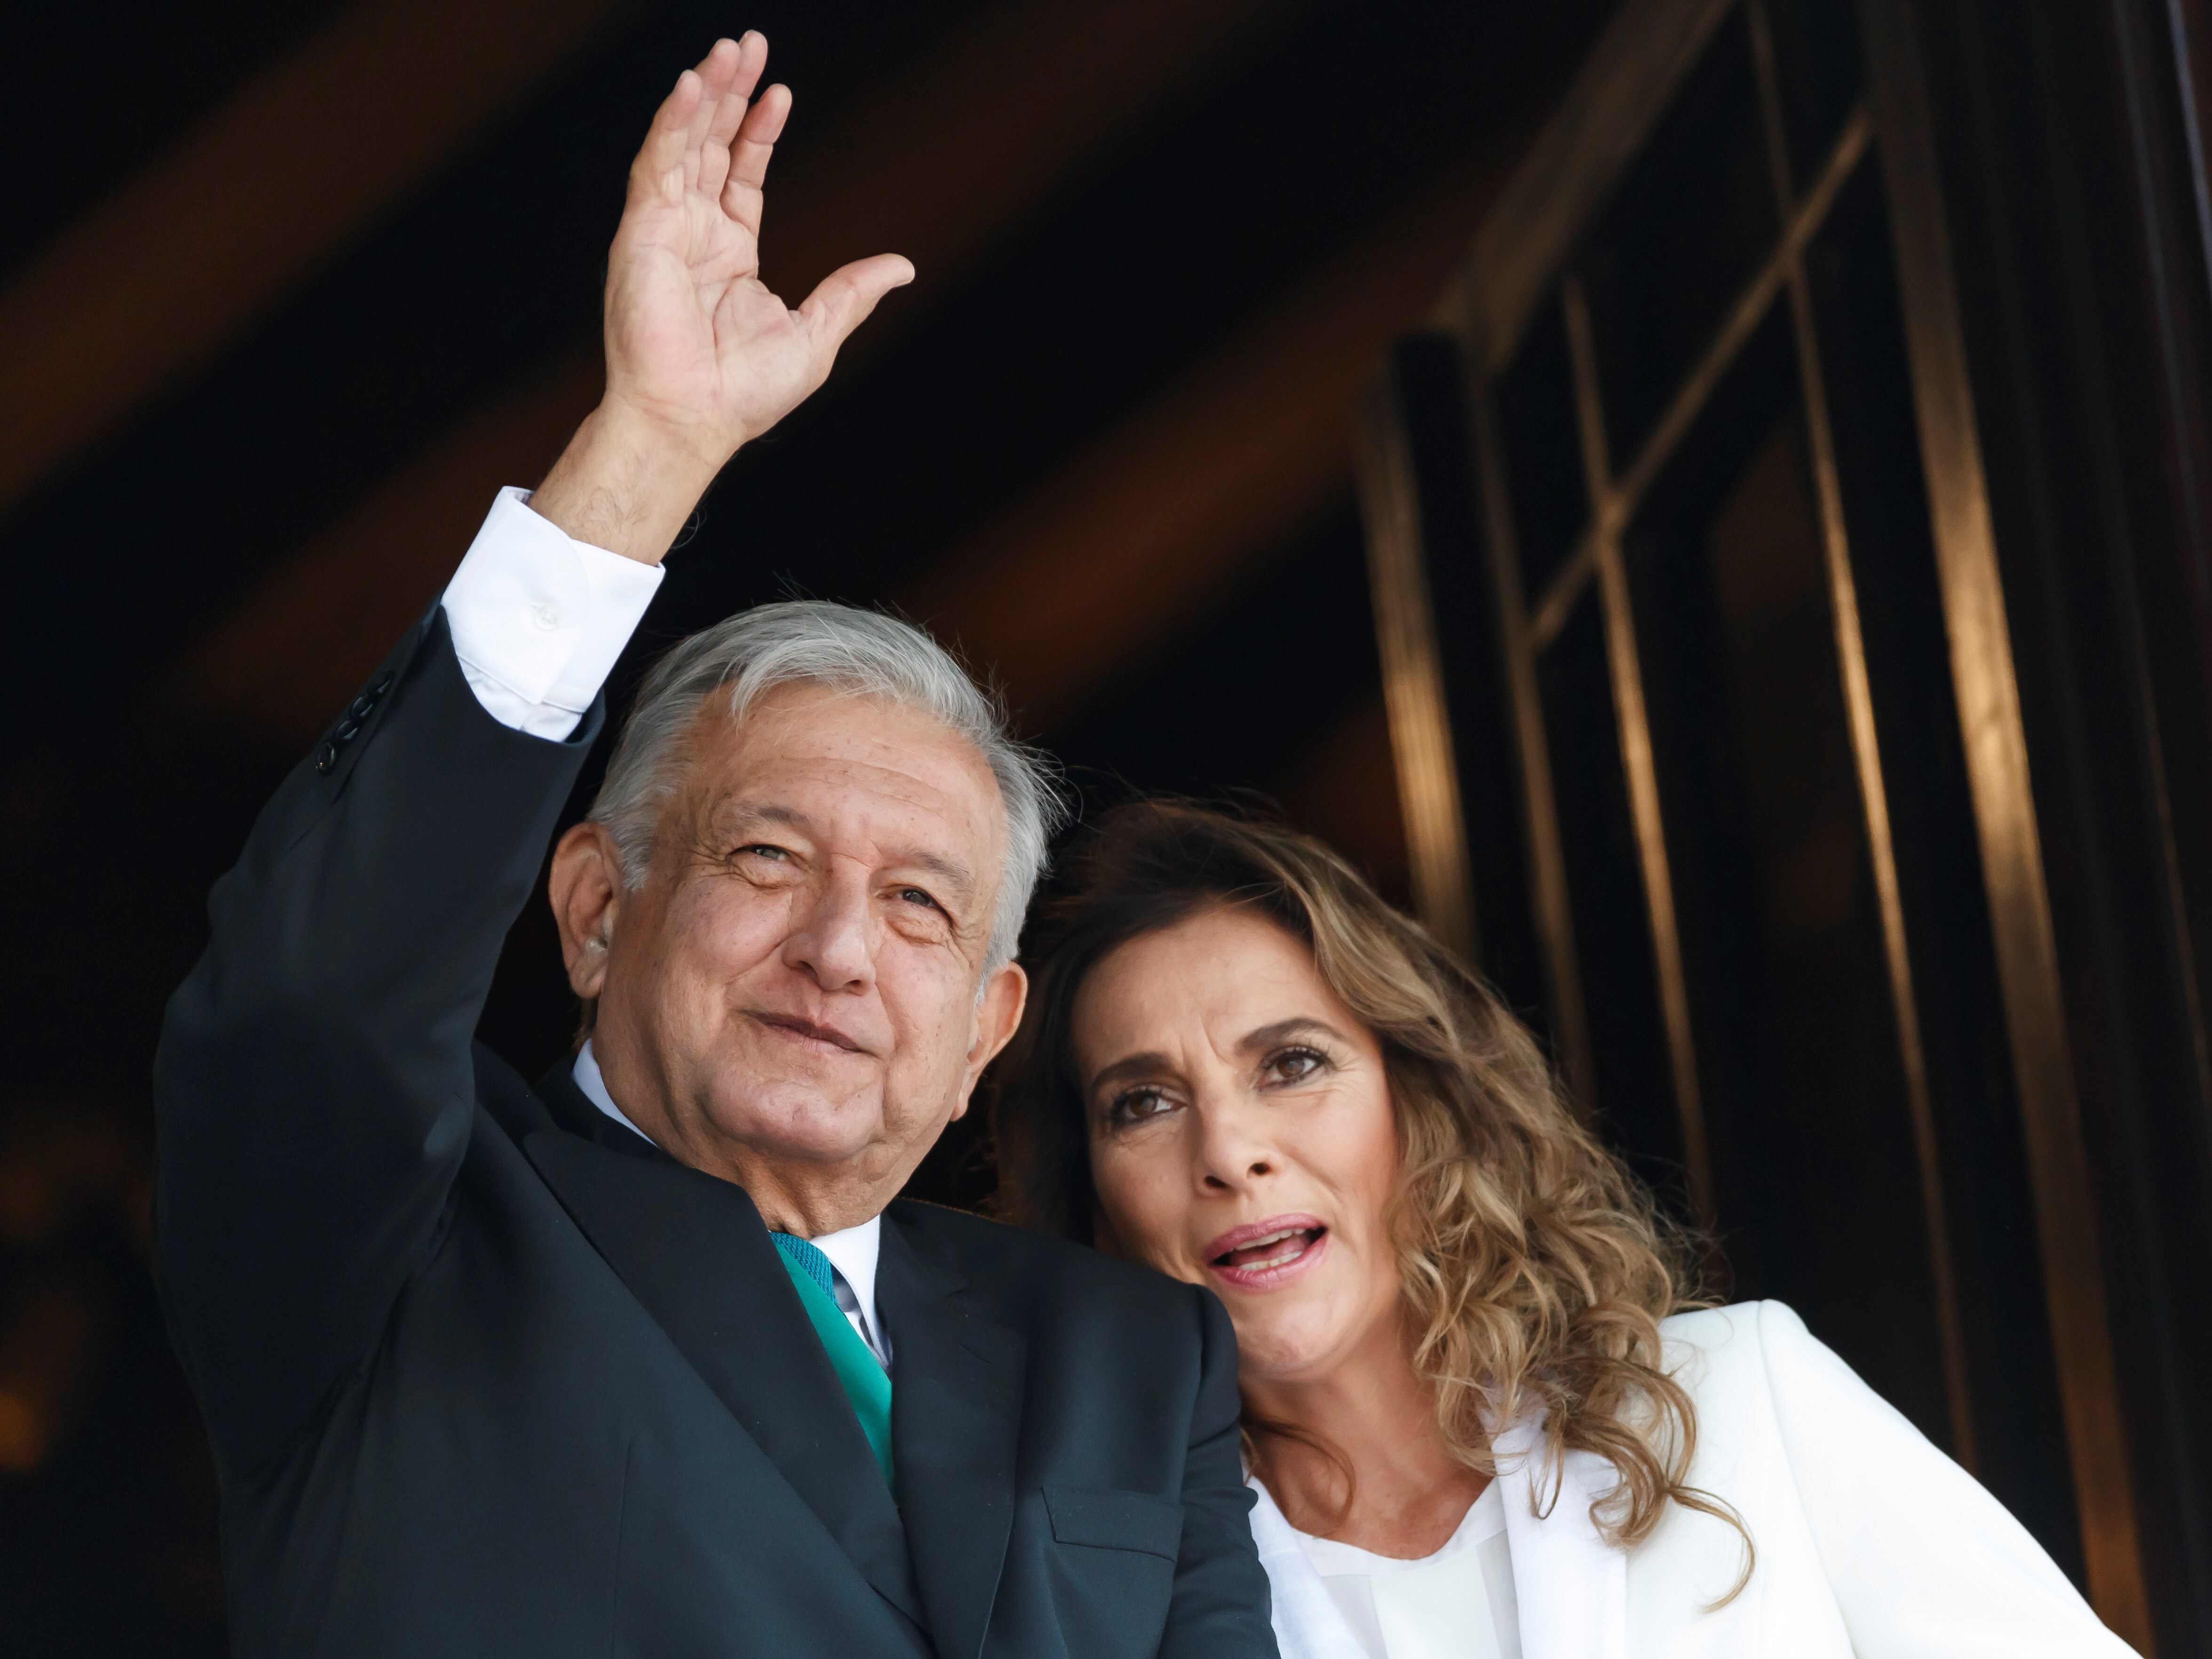 El presidente Andrés Manuel López Obrador y su esposa Beatriz Gutiérrez Müller, buscan registrar sus nombres y siglas como  marcas. (Foto: EFE/José Méndez)
